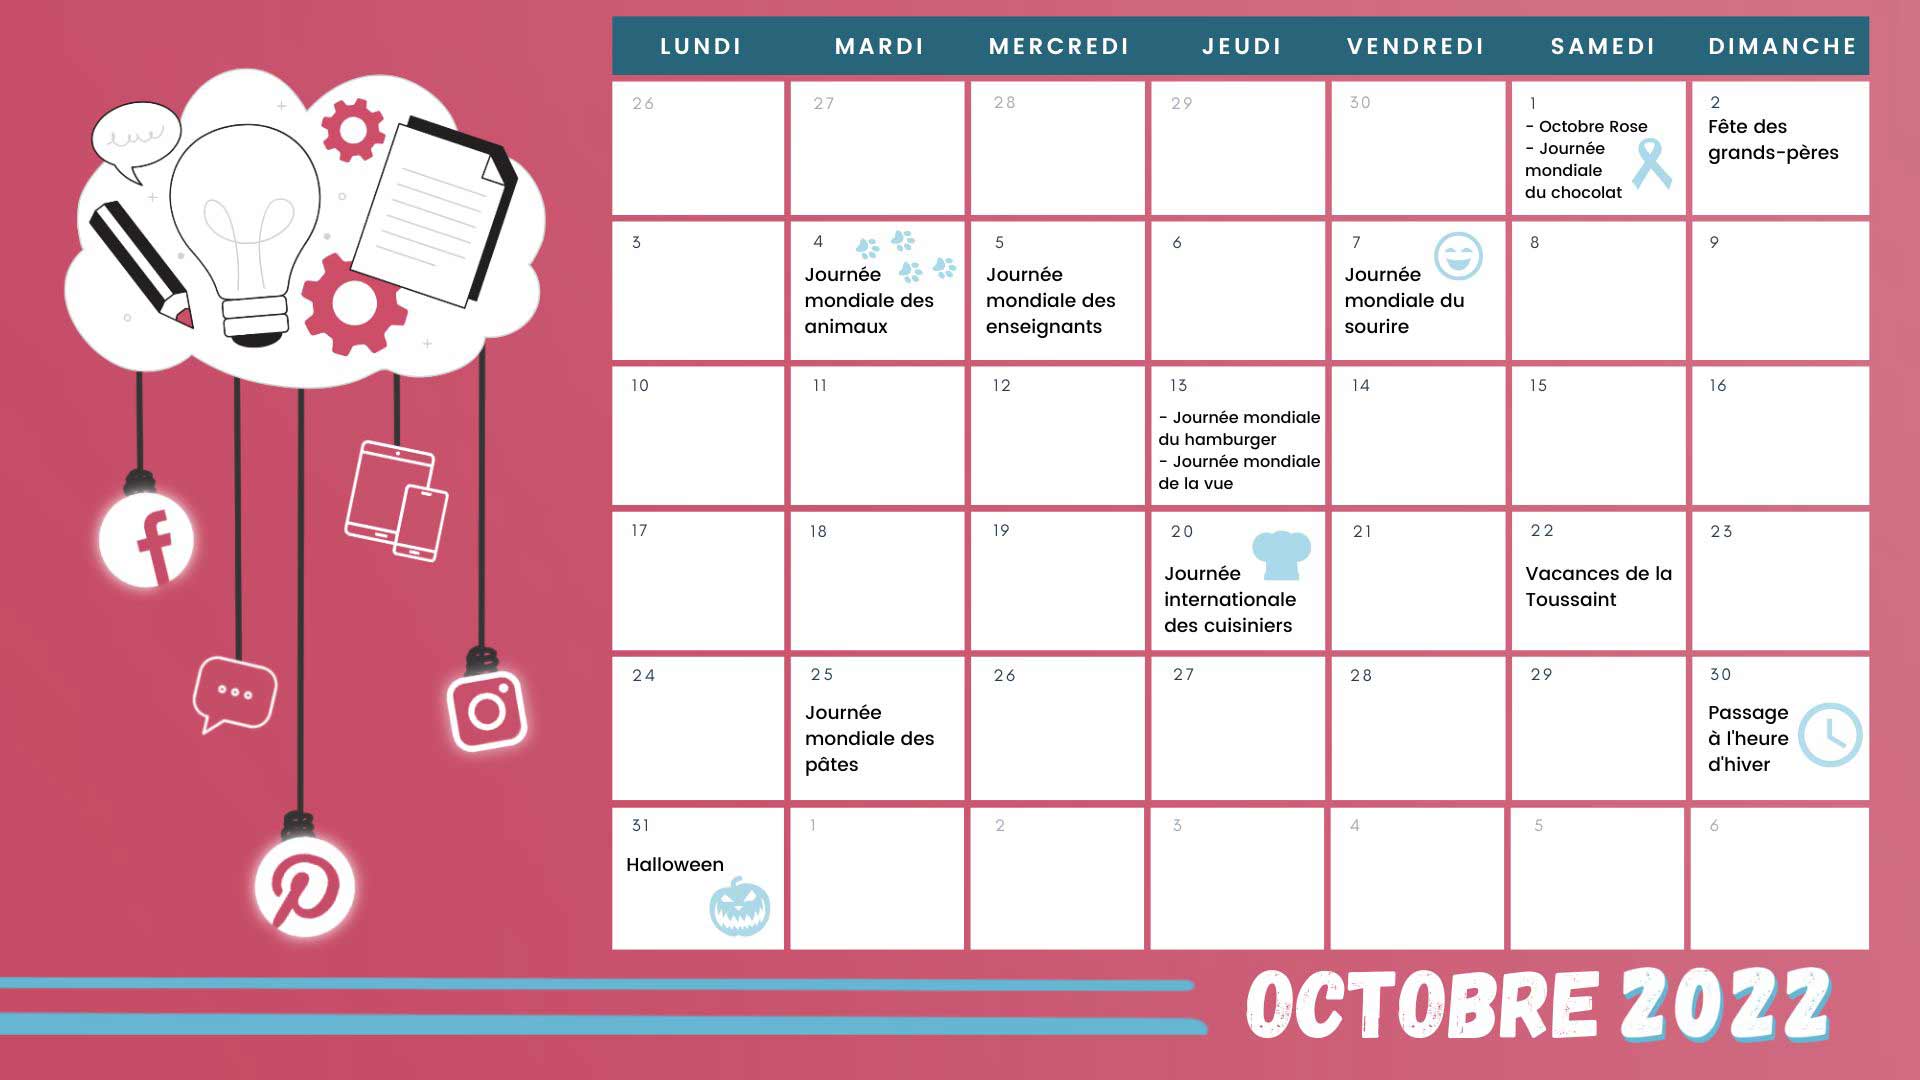 Retrouvez tous les événements du mois grâce à votre calendrier marronnier octobre 2022 !